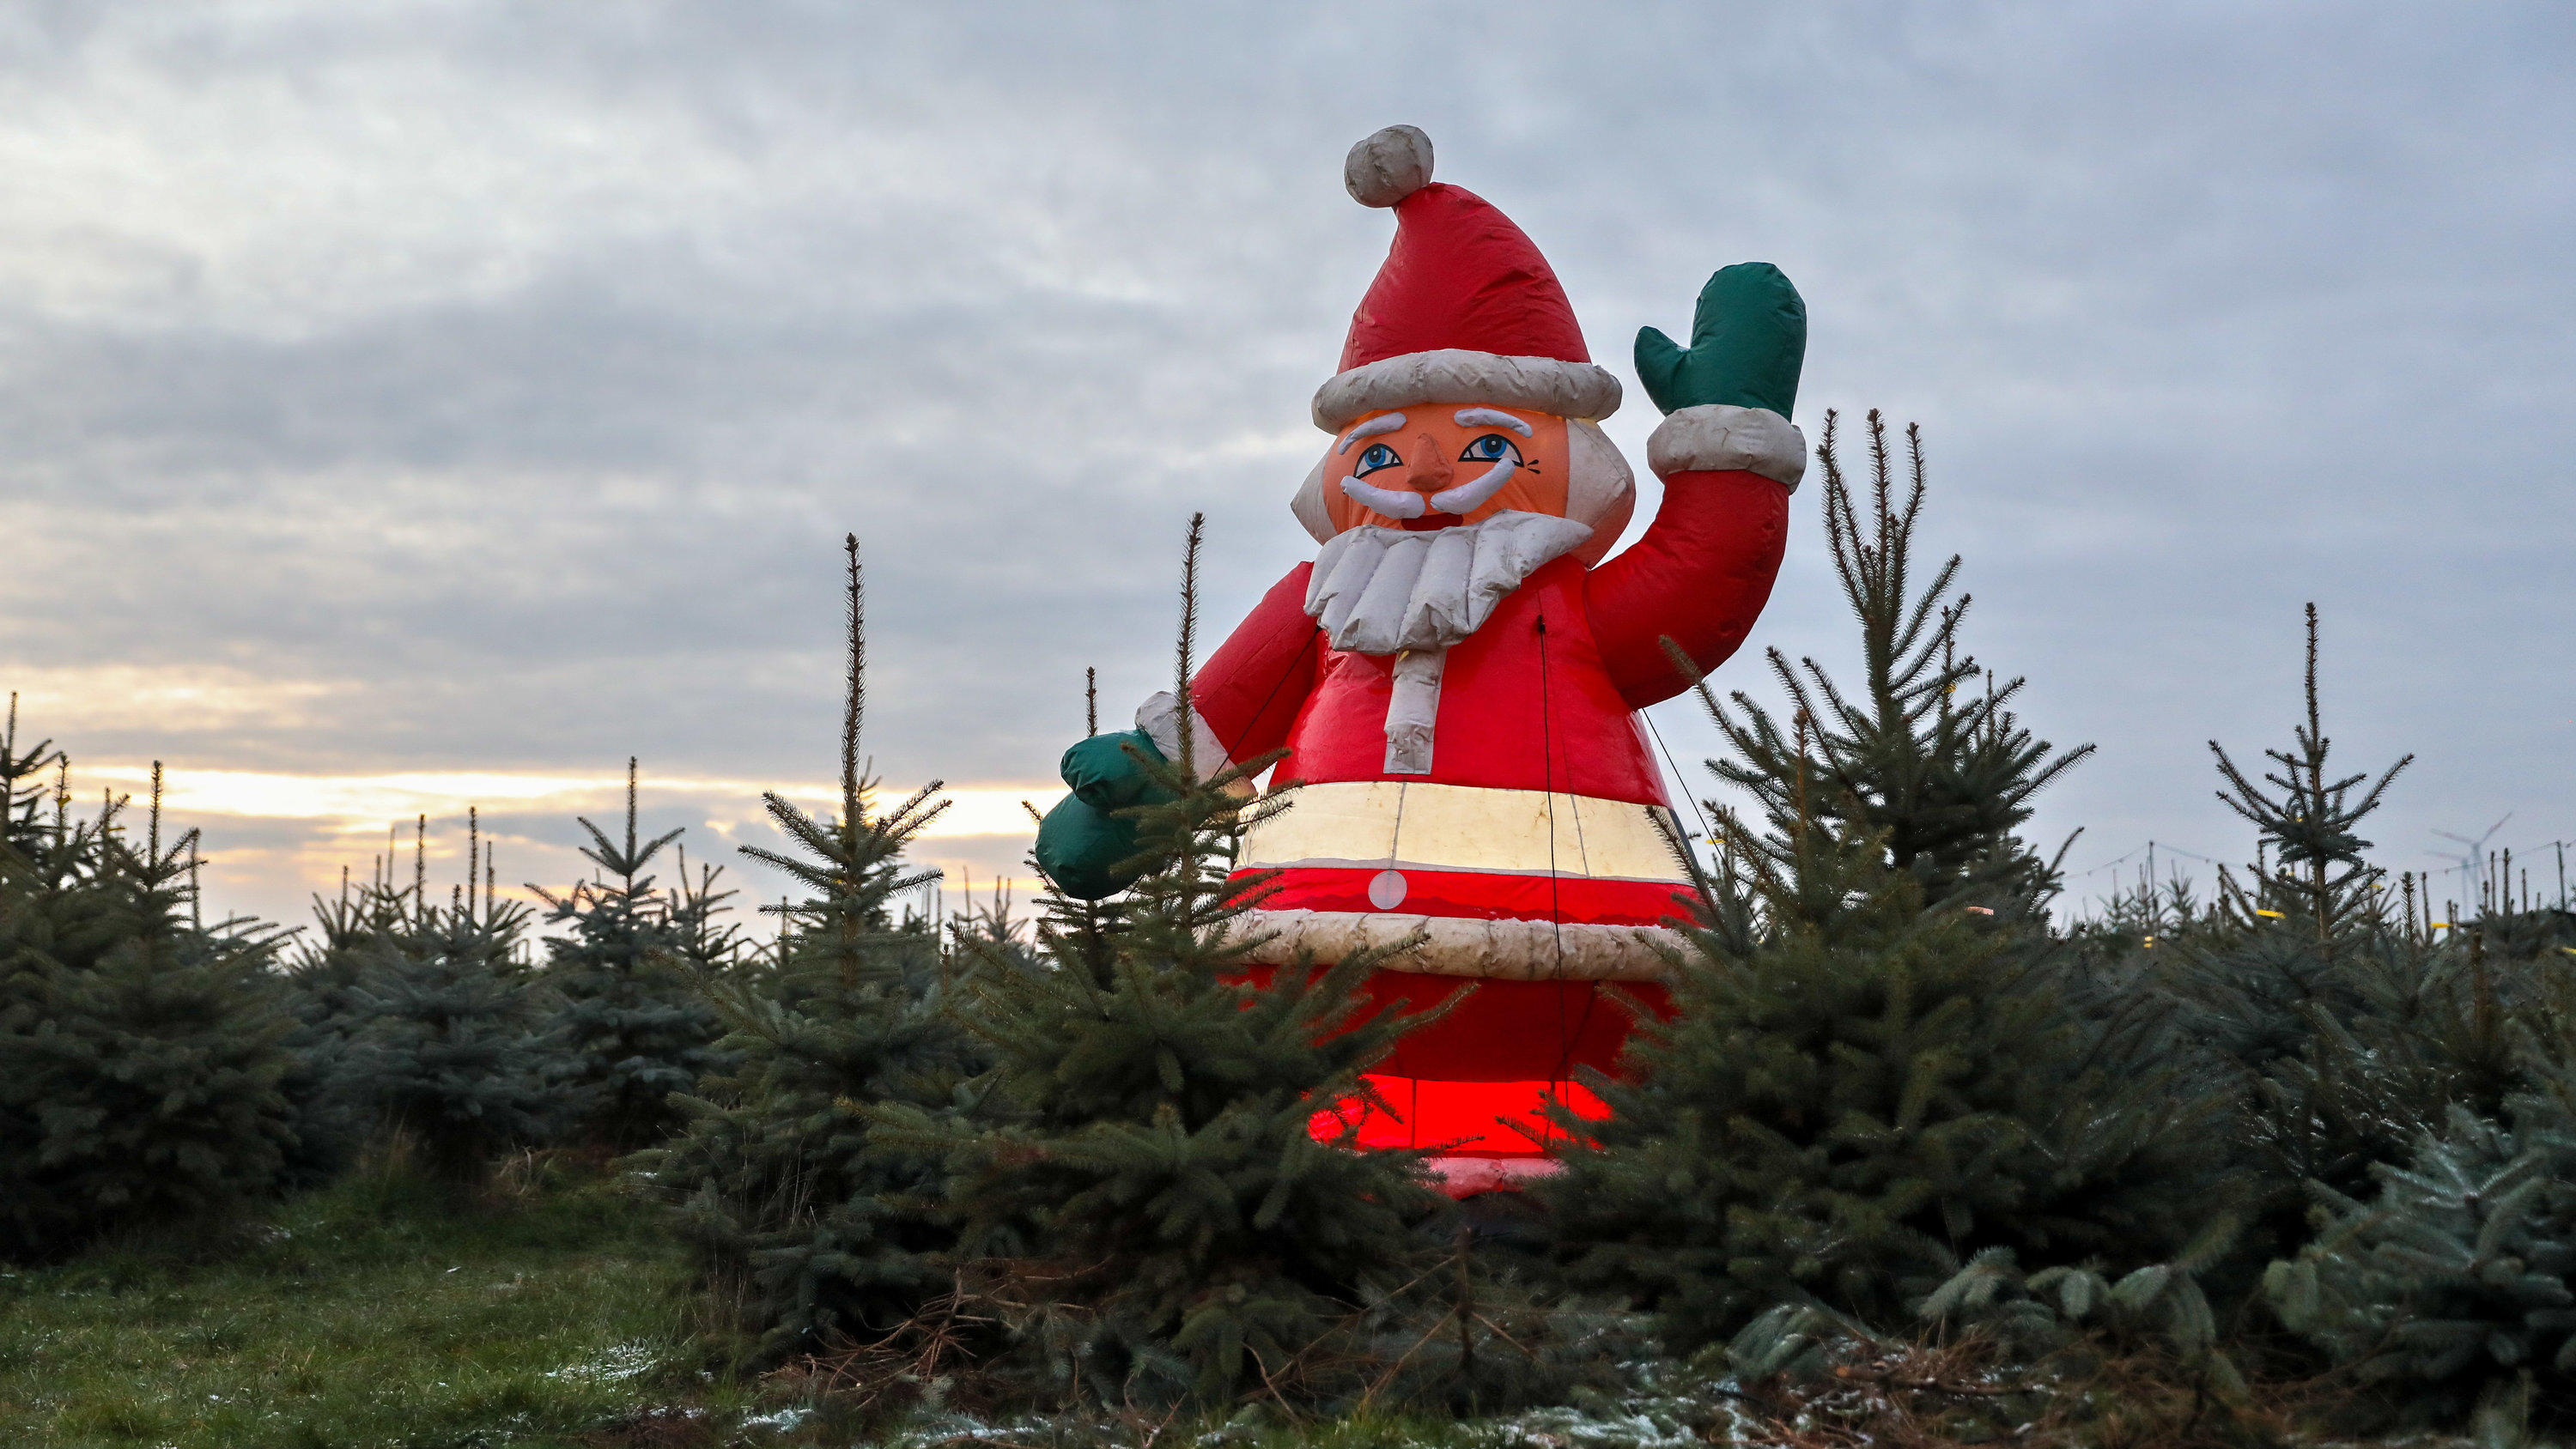 17.12.2018, Sachsen, Leipzig: Ein Weihnachtsmann steht in einer grünen Weihnachtsbaumplantage bei Leipzig. Das derzeit milde Wetter lässt nur wenig Hoffnung auf Schnee an Heiligabend zu. Foto: Jan Woitas/dpa-Zentralbild/dpa +++ dpa-Bildfunk +++